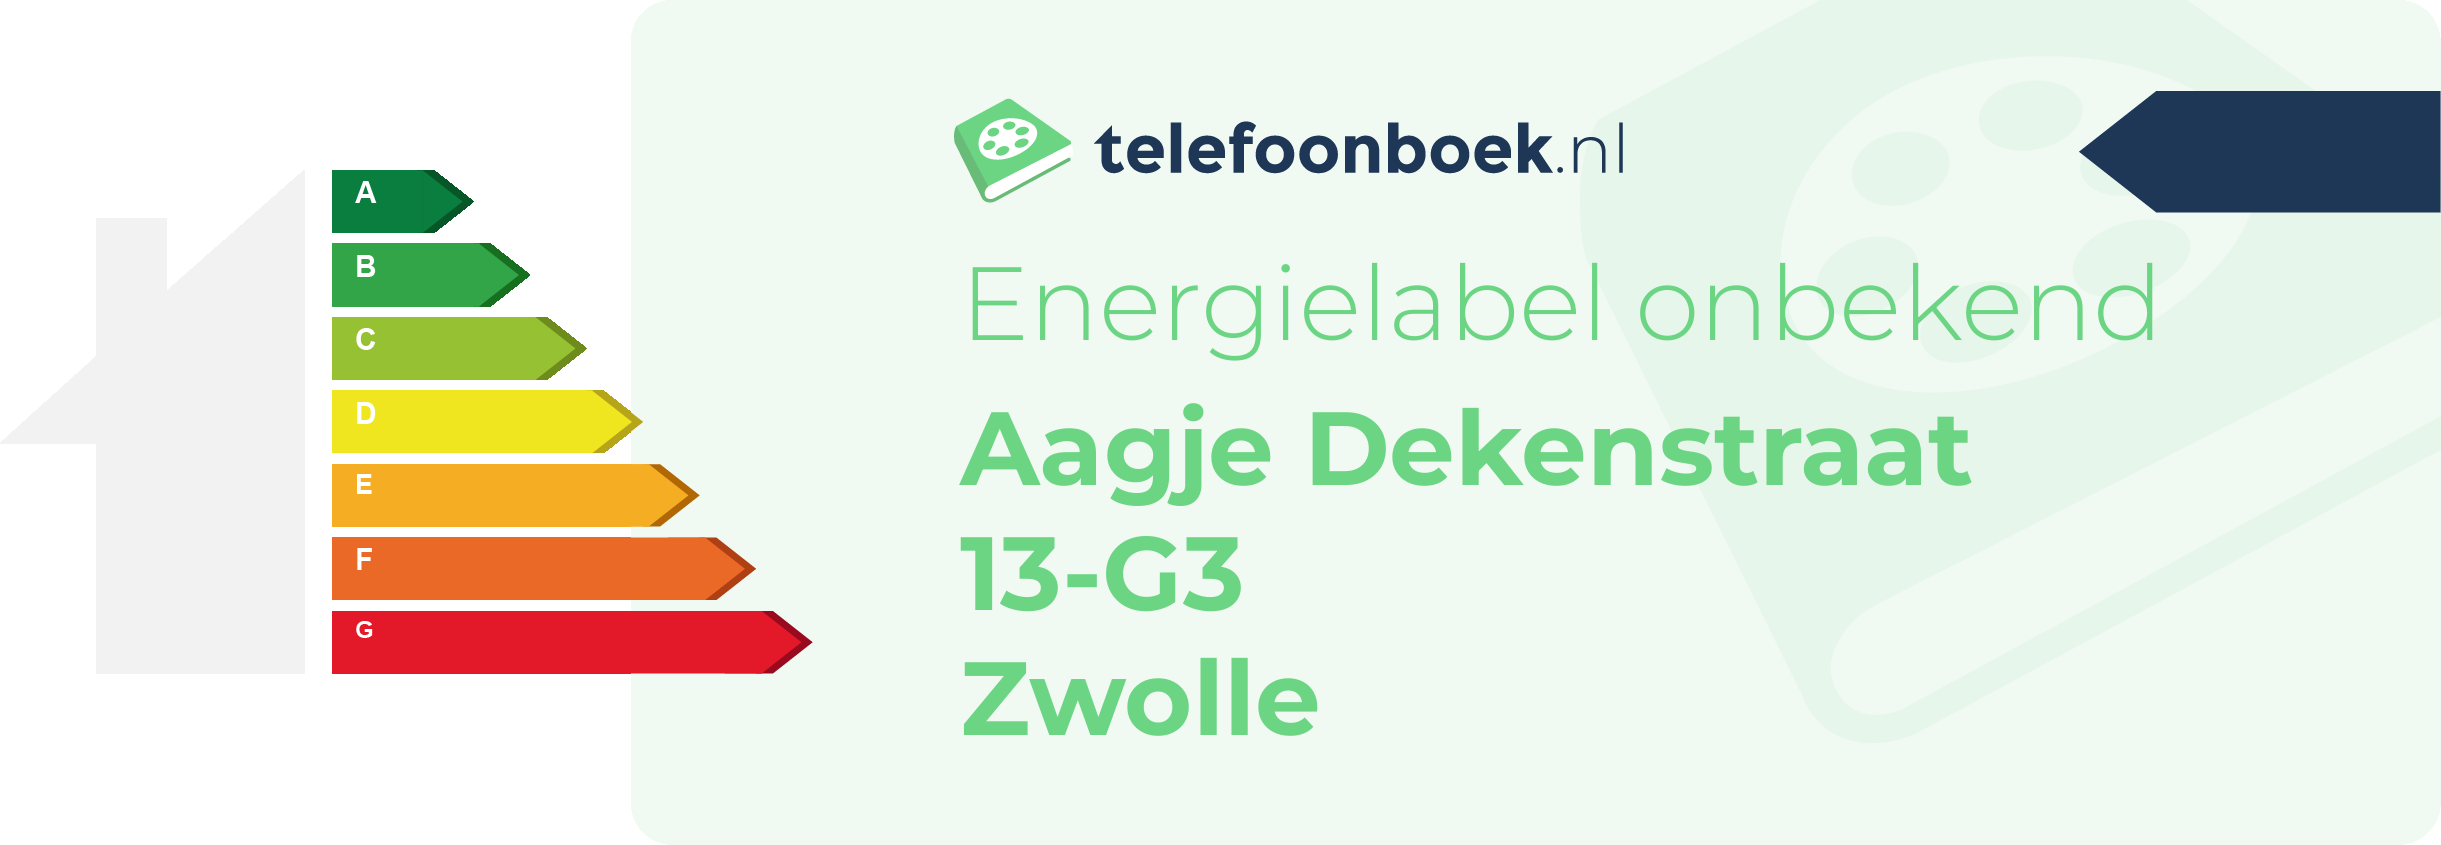 Energielabel Aagje Dekenstraat 13-G3 Zwolle